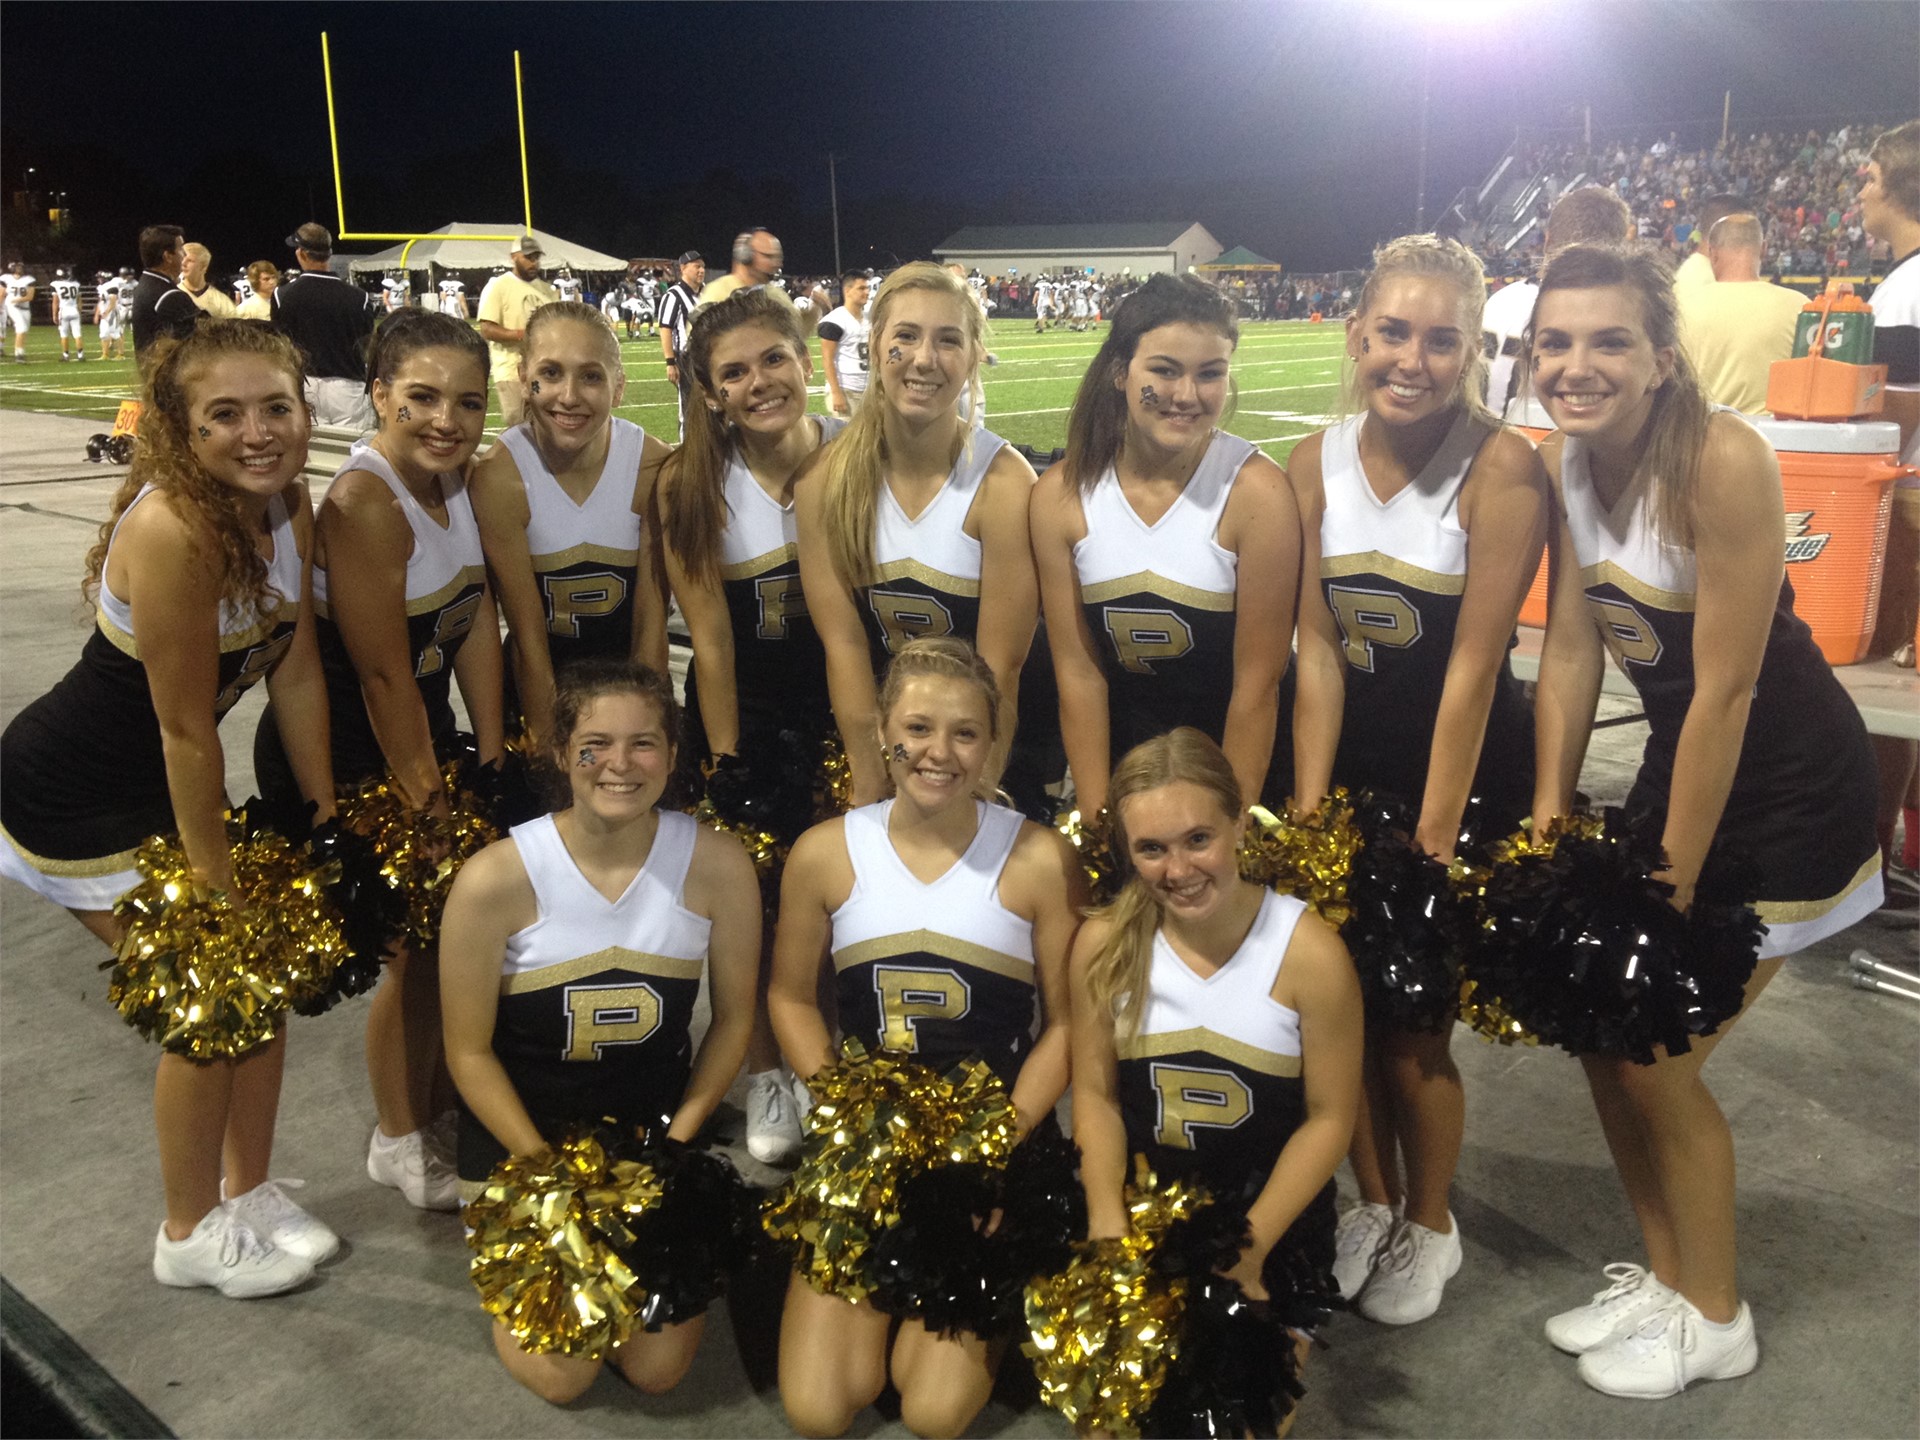 PHS cheerleaders posing at a football game